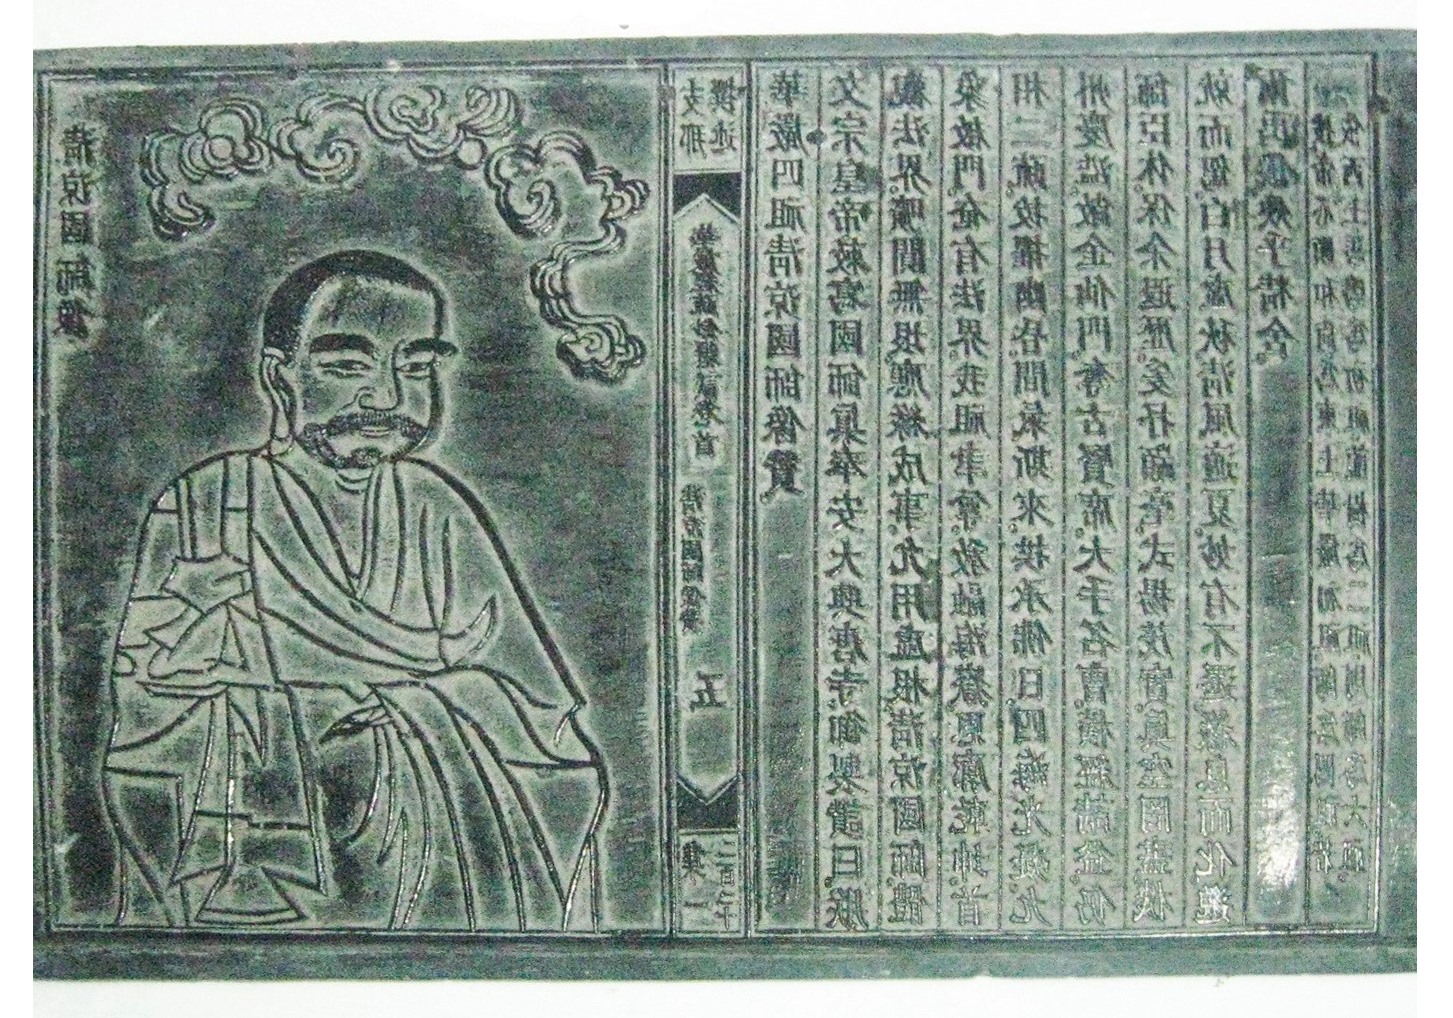 Mộc bản chùa Vĩnh Nghiêm - kiệt tác mĩ thuật khắc gỗ truyền thống